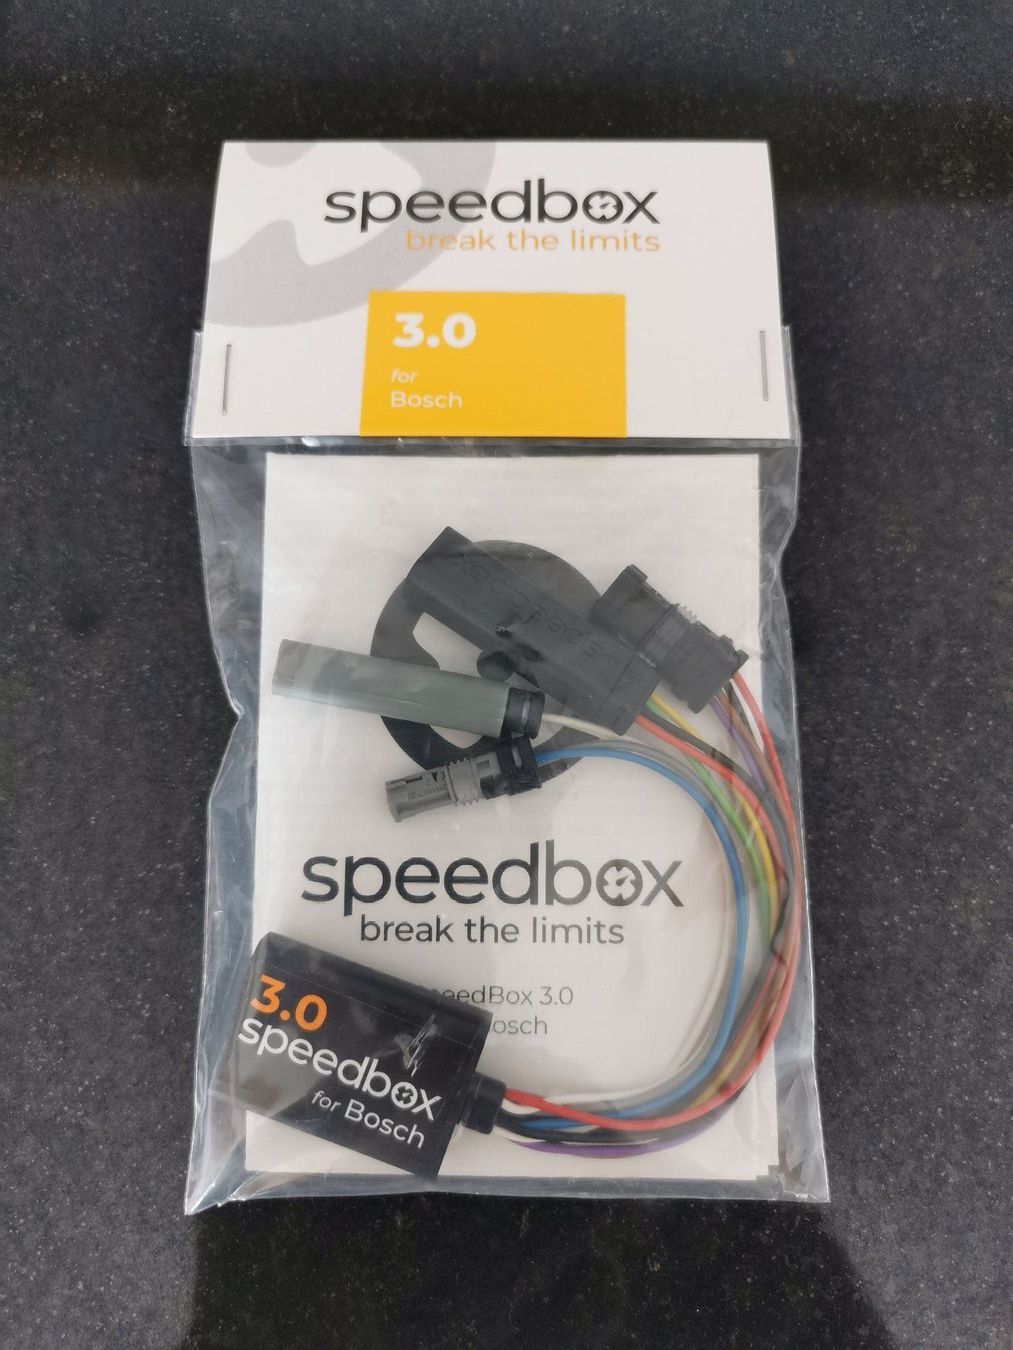 speedbox 3.0 for bosch